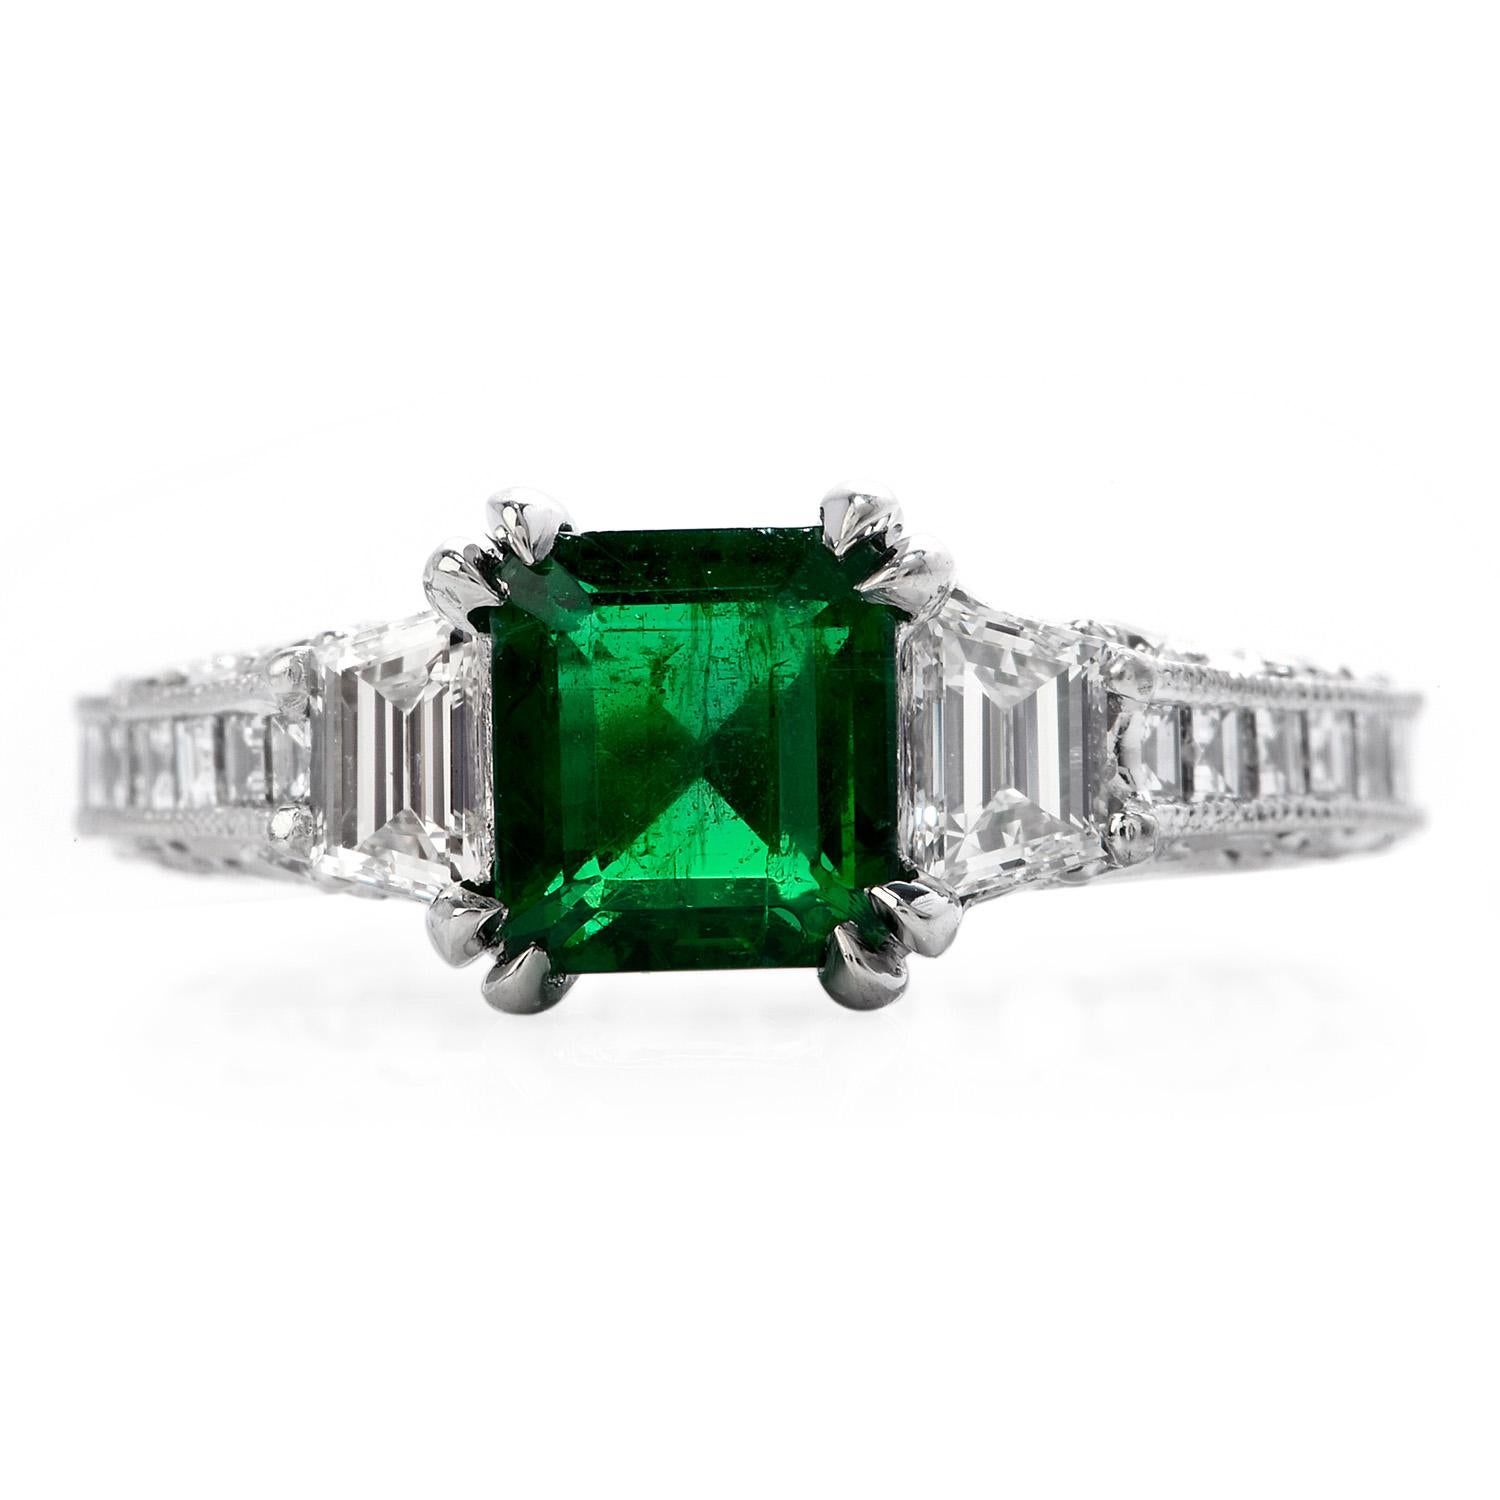 Dieses Tacori-Stück im Eternity-Design mit GRS-zertifiziertem Smaragd und Diamanten ist eine exquisite Anschaffung.

Gefertigt aus massivem, schwerem Platin, ziert das Zentrum ein GRS-zertifizierter sambischer Smaragd, mit geringer Behandlung, in